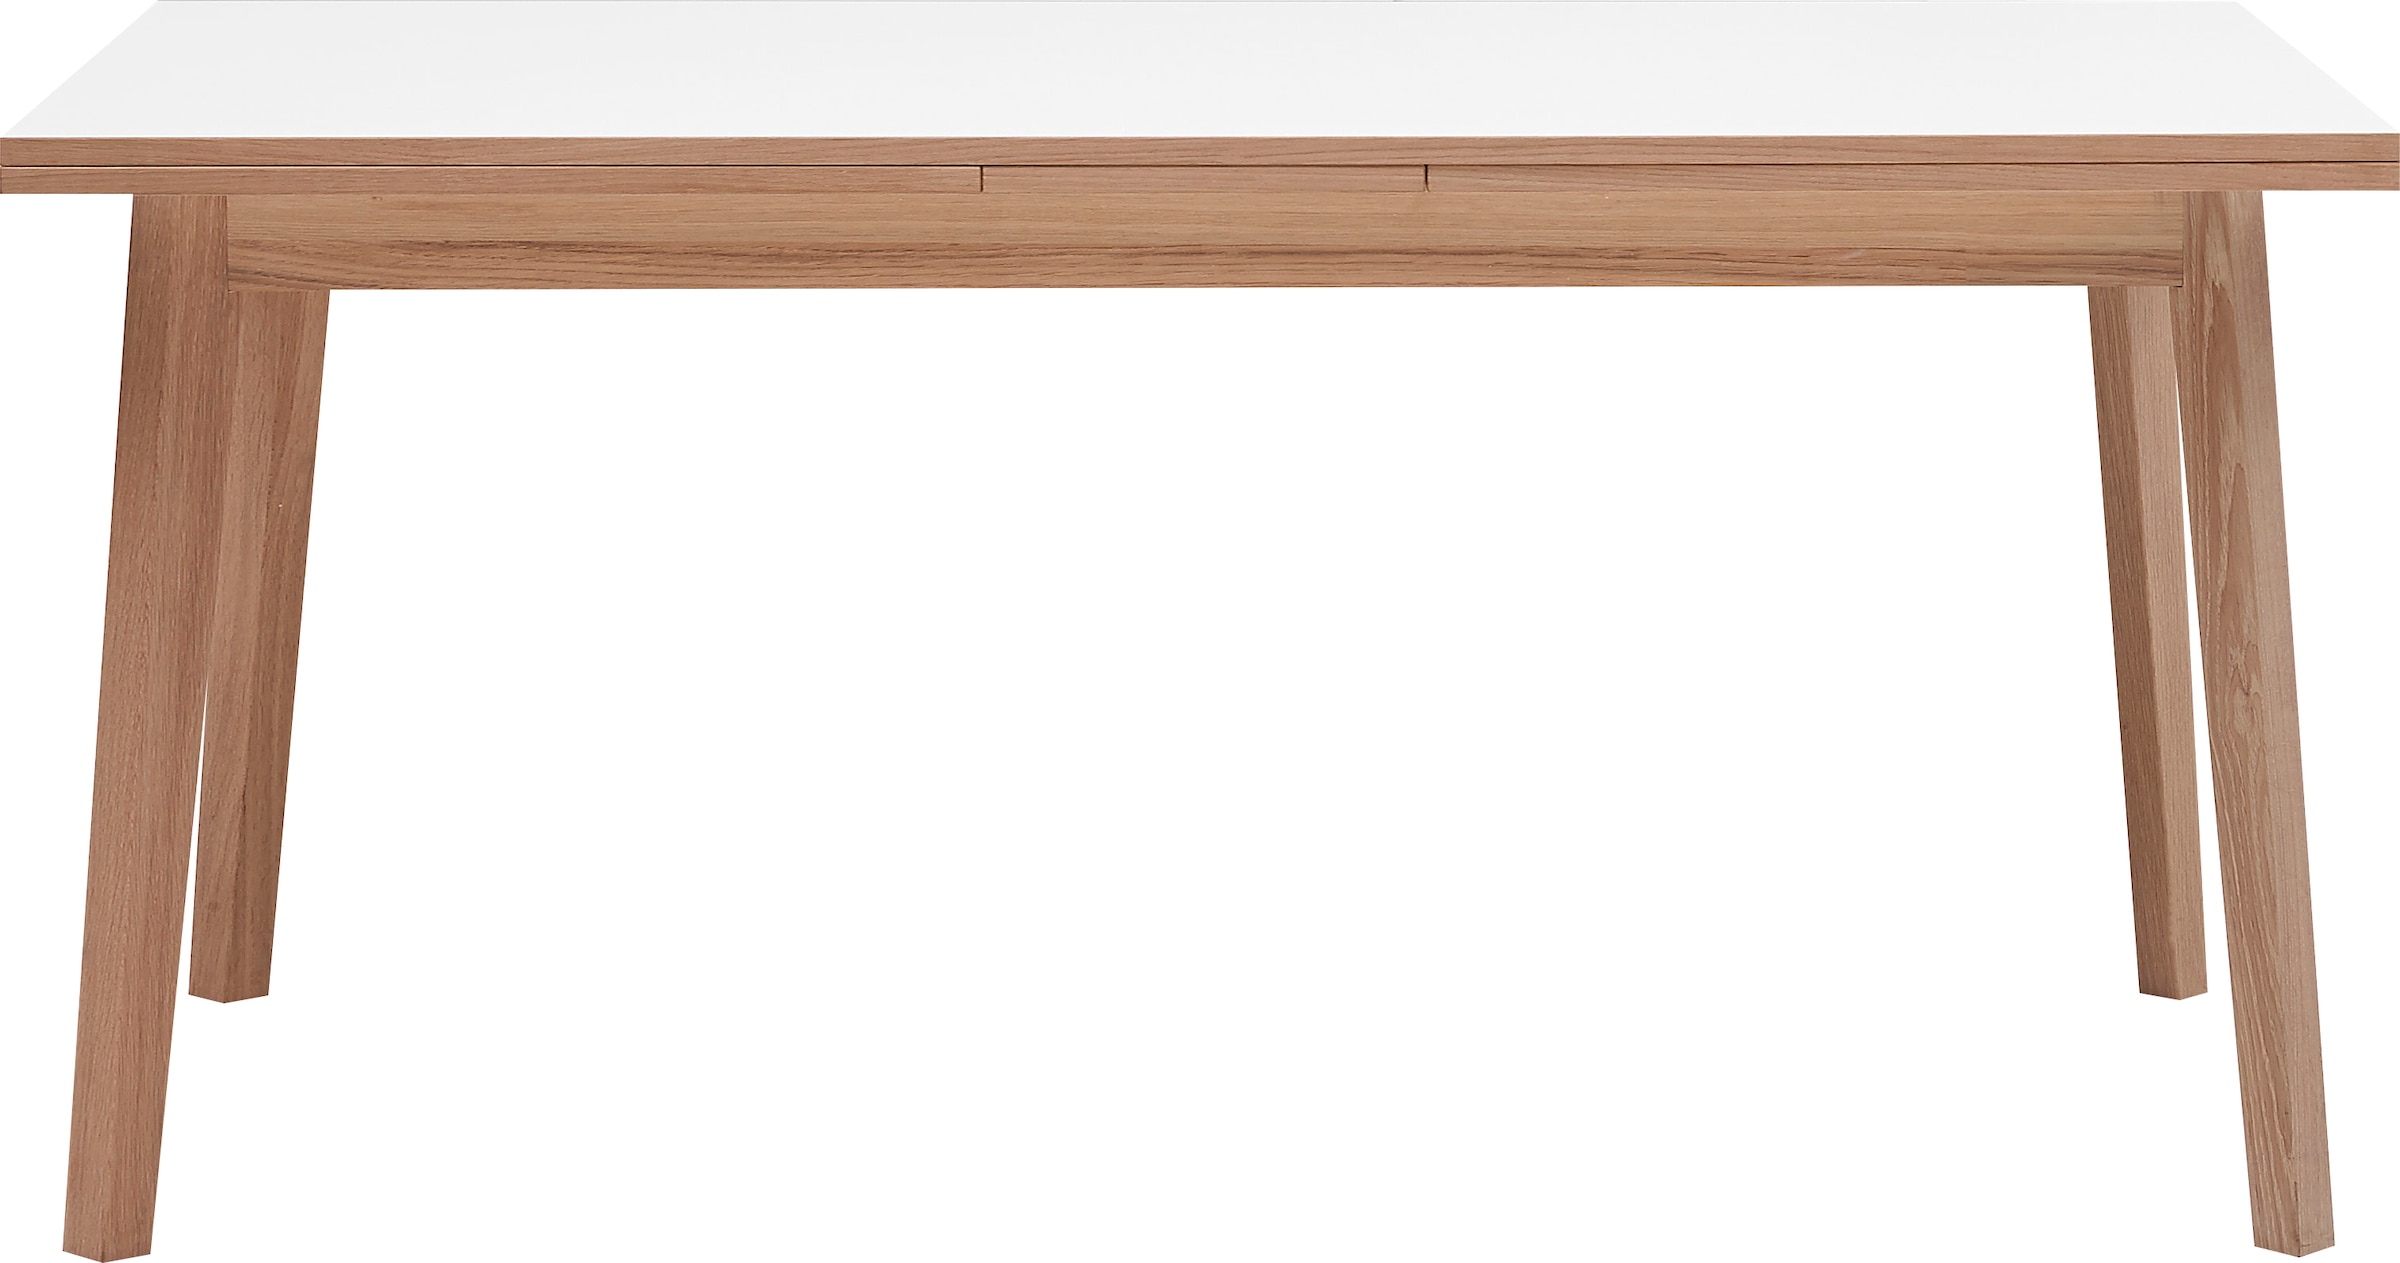 Hammel Furniture Esstisch »Basic Single, schnell innenliegende Einlegeplatten ausziehbar,«, 180(280)x80 cm, Melamin / Massivholz, stabiler dänische Design Tisch